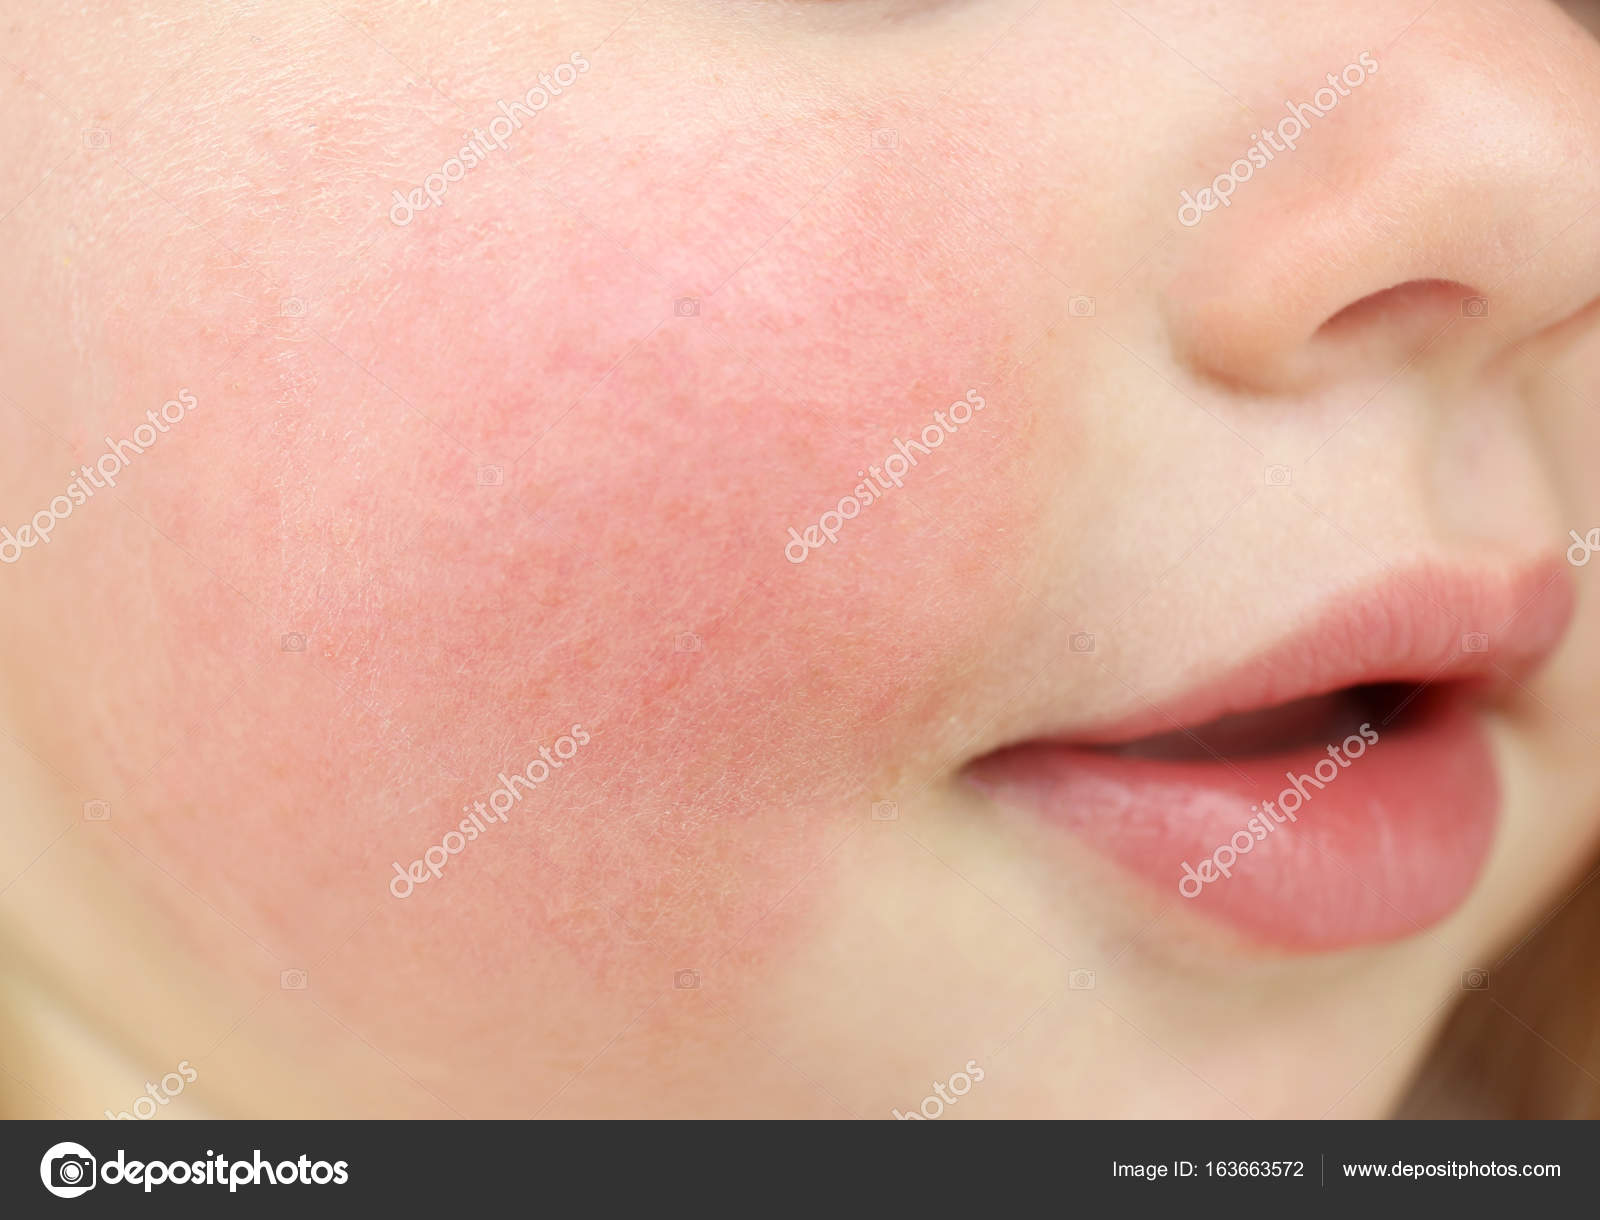 Атопический дерматит на щеках у ребенка